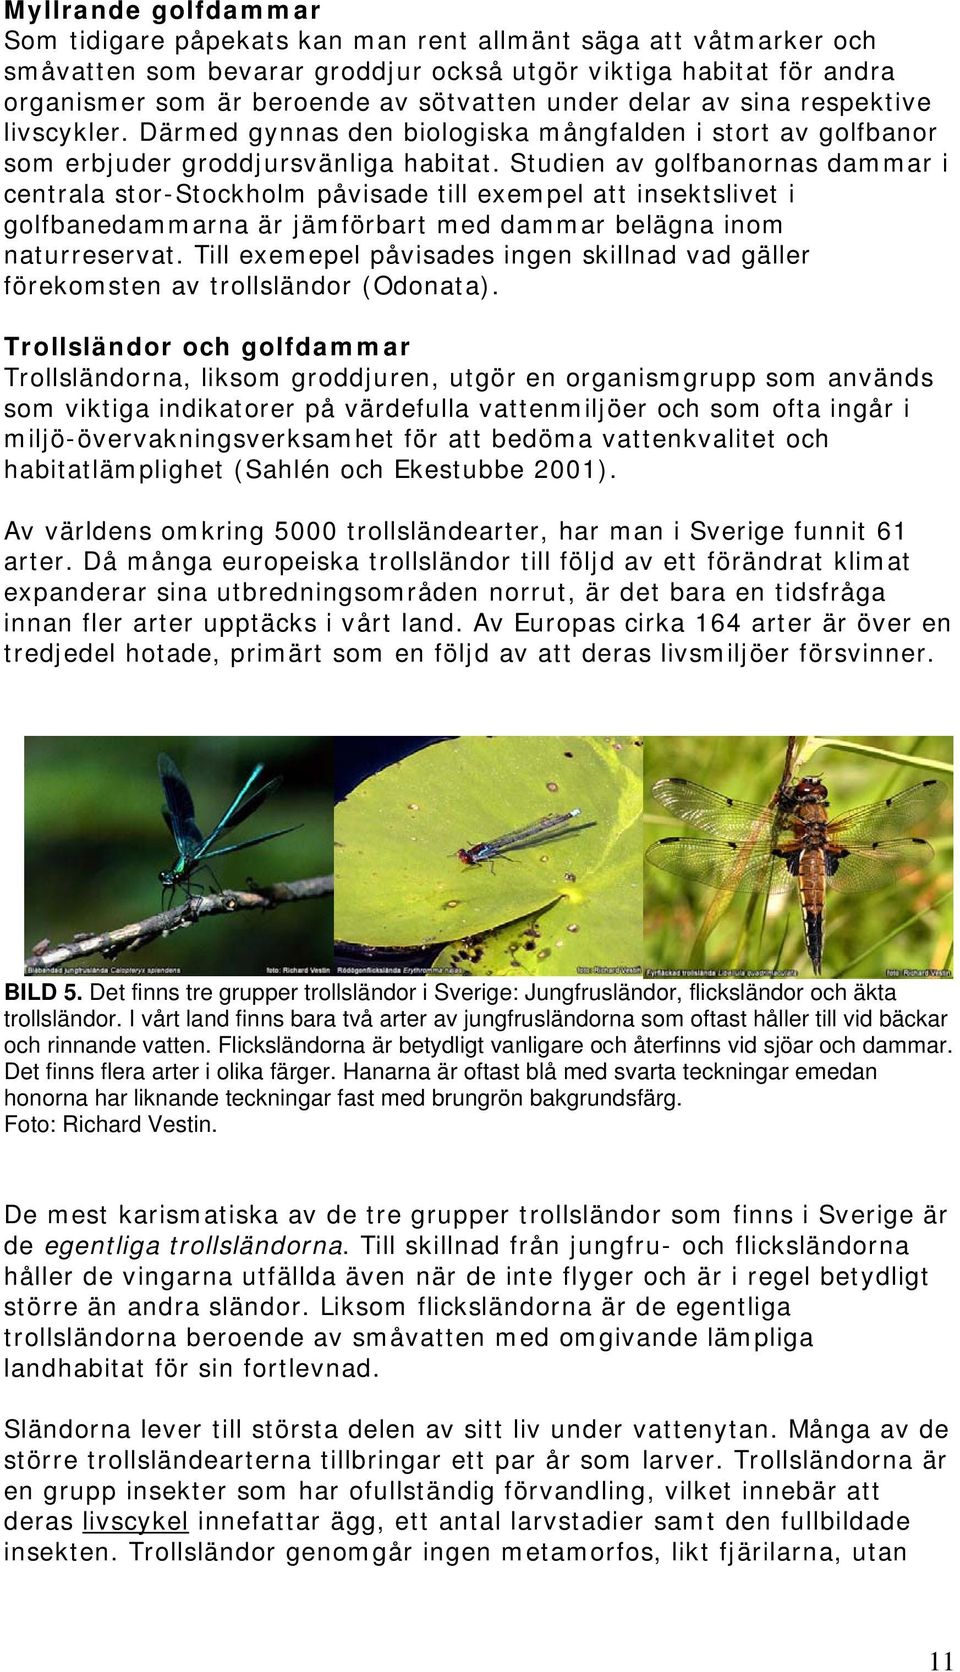 Studien av golfbanornas dammar i centrala stor-stockholm påvisade till exempel att insektslivet i golfbanedammarna är jämförbart med dammar belägna inom naturreservat.